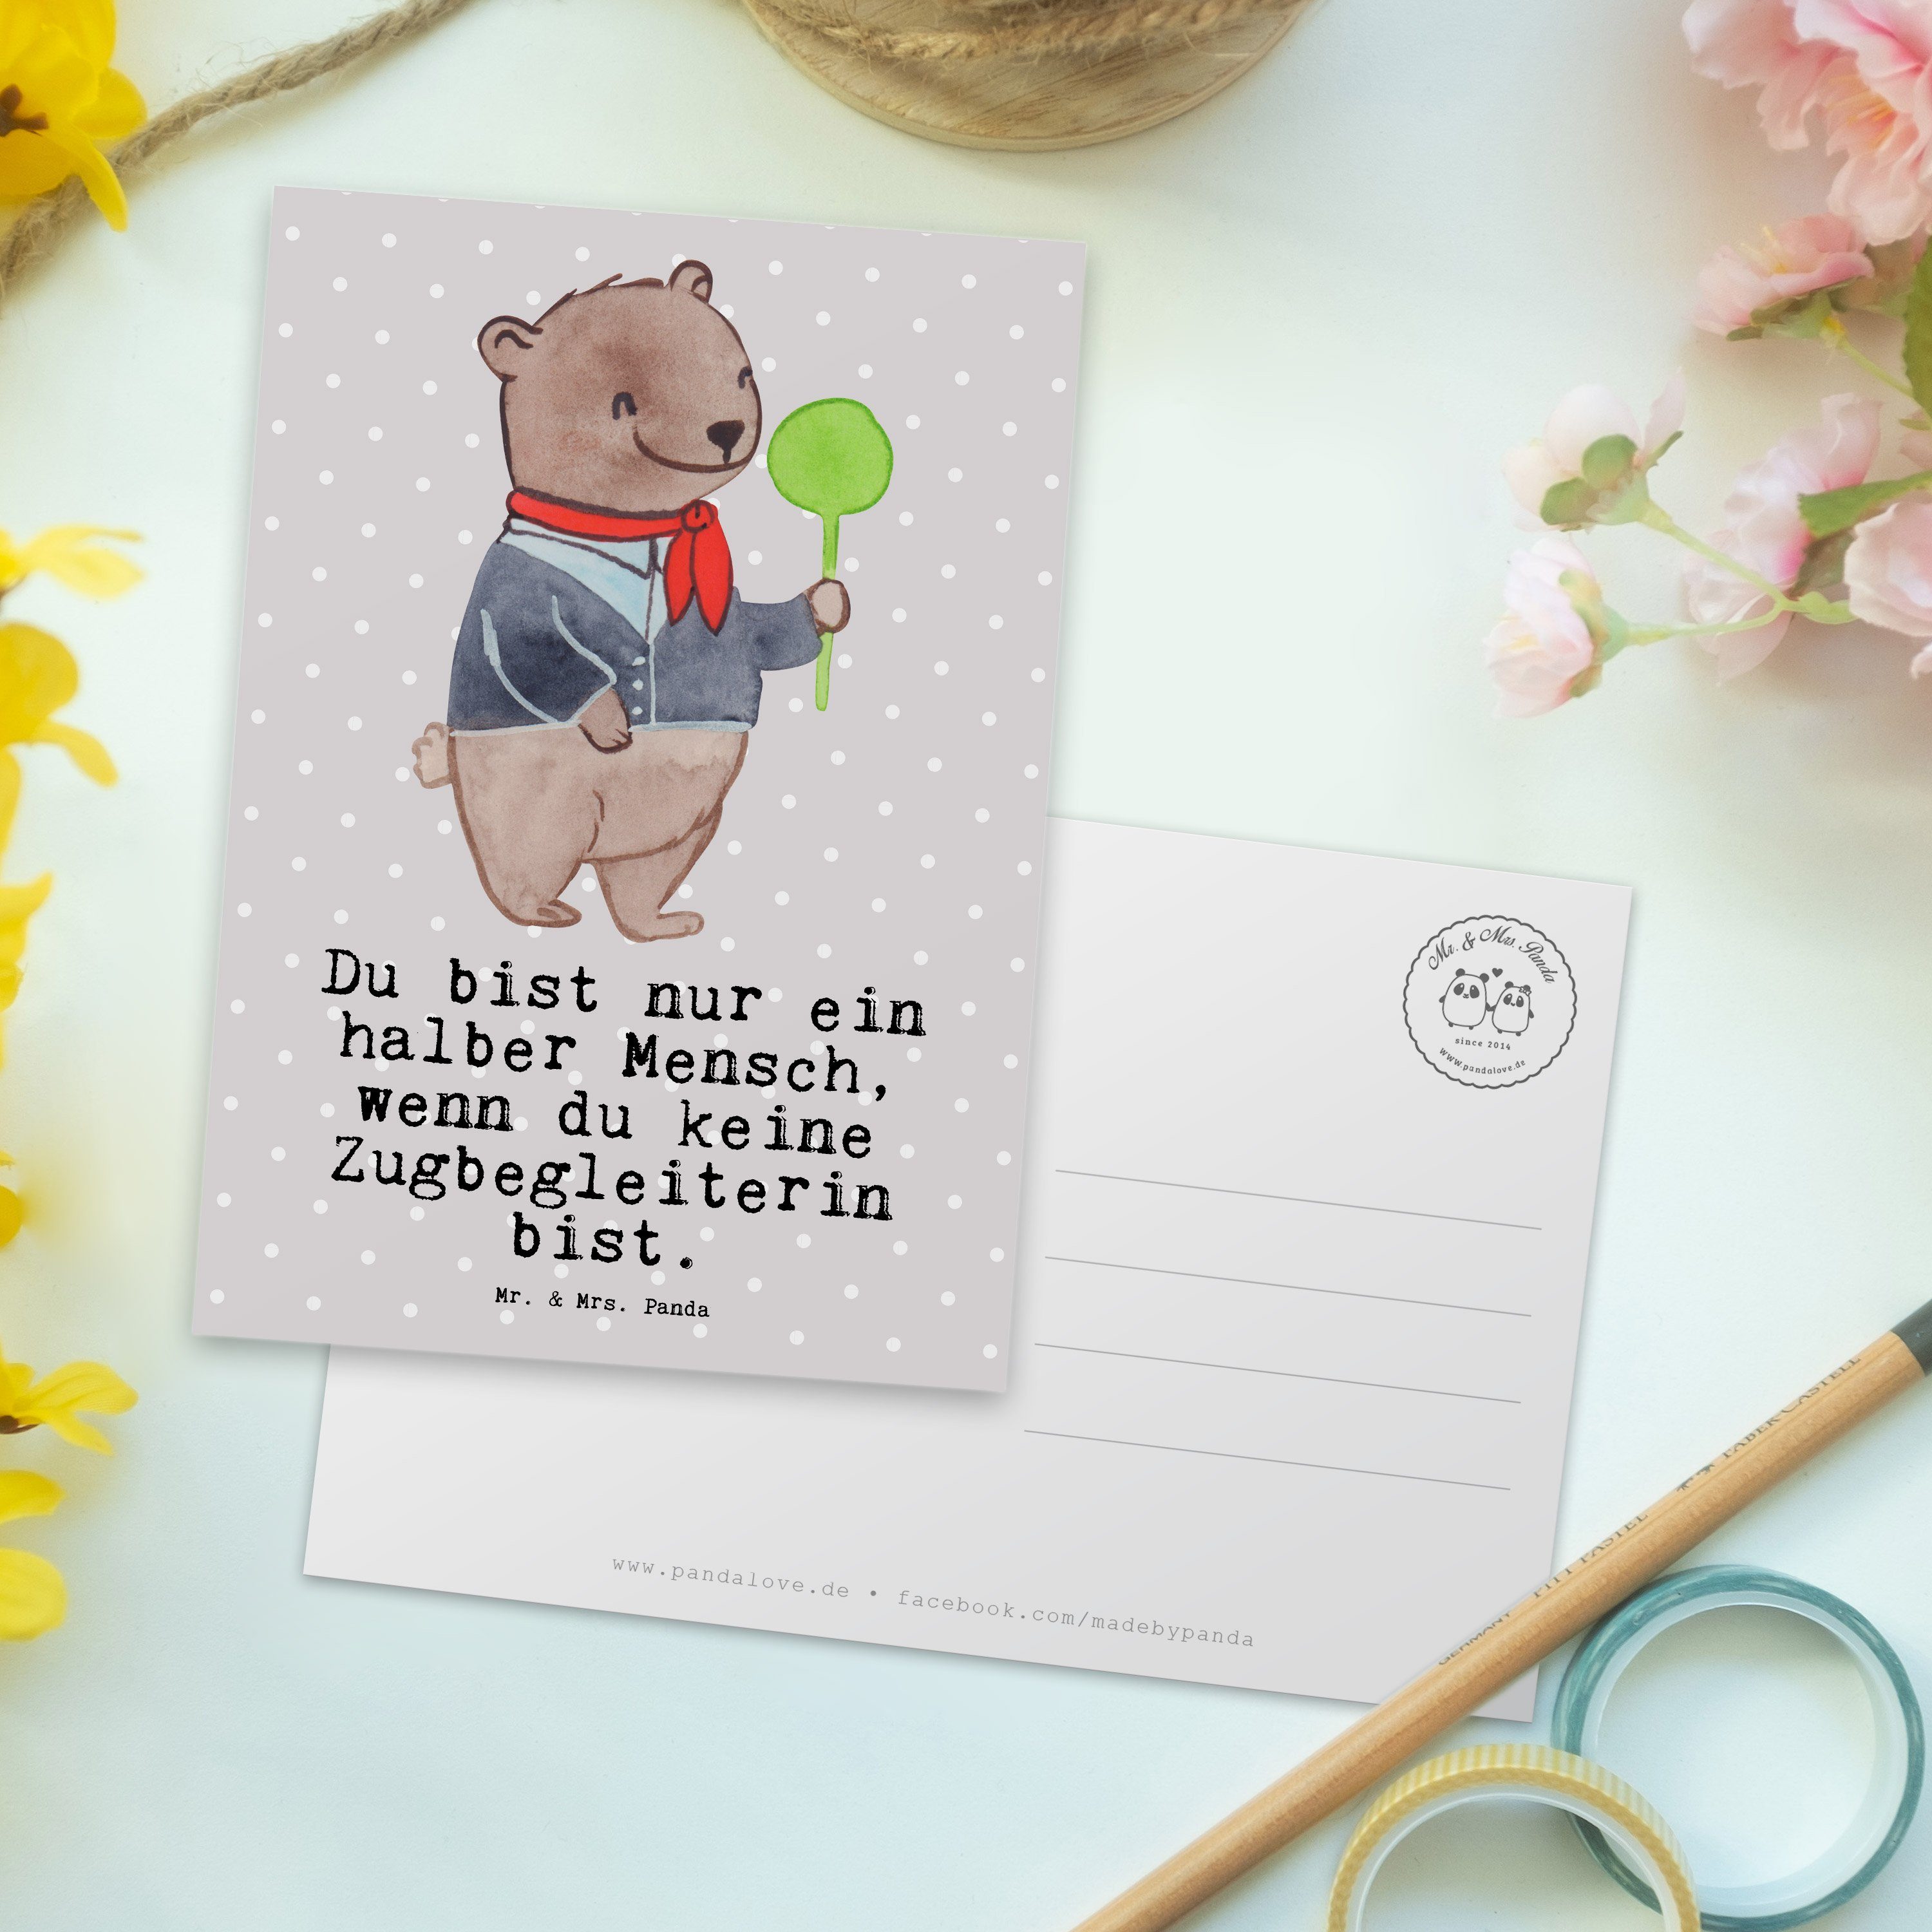 Pastell mit - Mrs. Panda Geschenkkarte, Geschenk, Zugbegleiterin Fir Herz & - Grau Postkarte Mr.